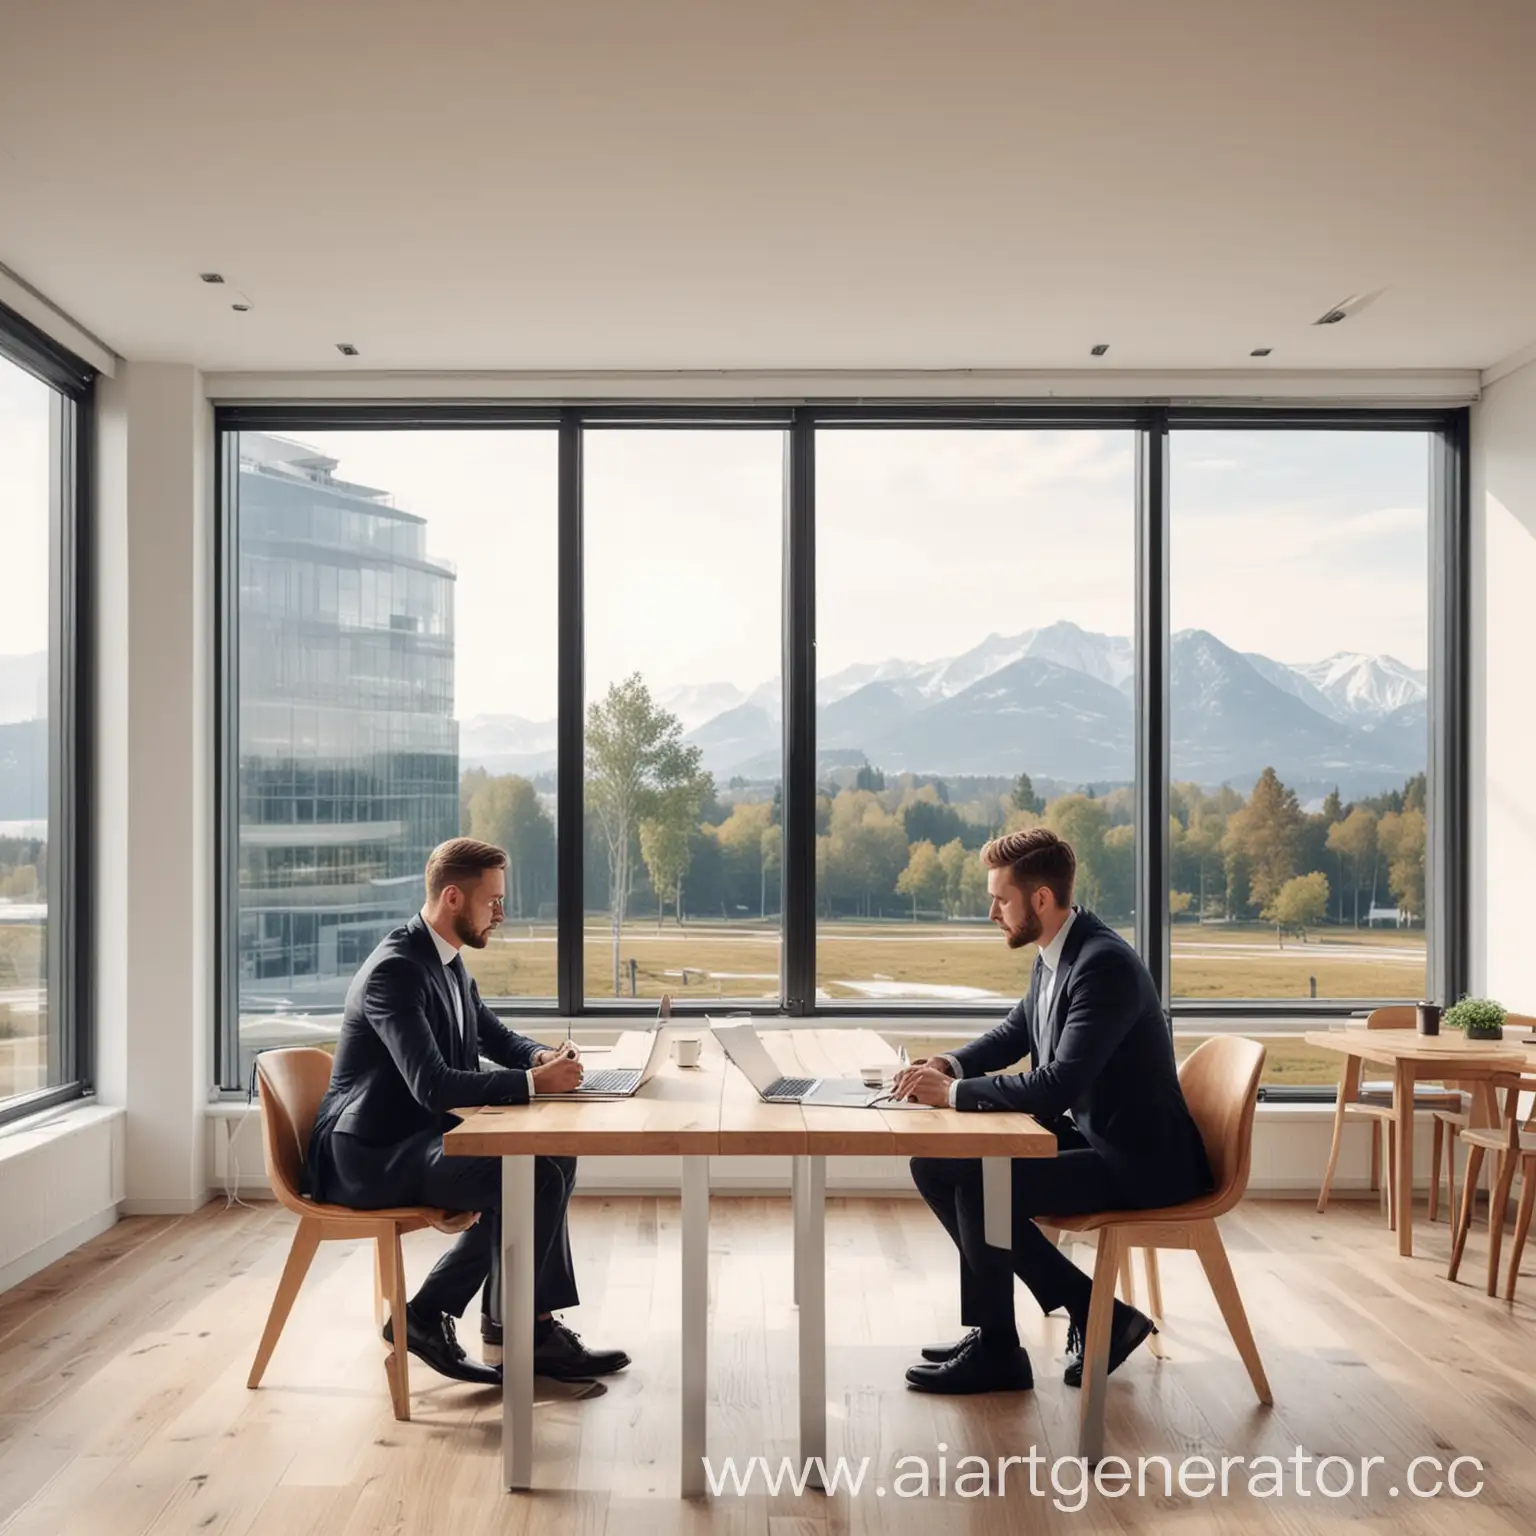 Деловая встреча двух мужчин в костюмах, обсуждающих документы на фоне современного офиса с панорамными окнами, деревянными столами и белыми стенами. На столе ноутбук, на стене логотип 1С. Реалистичный, детализированный стиль.